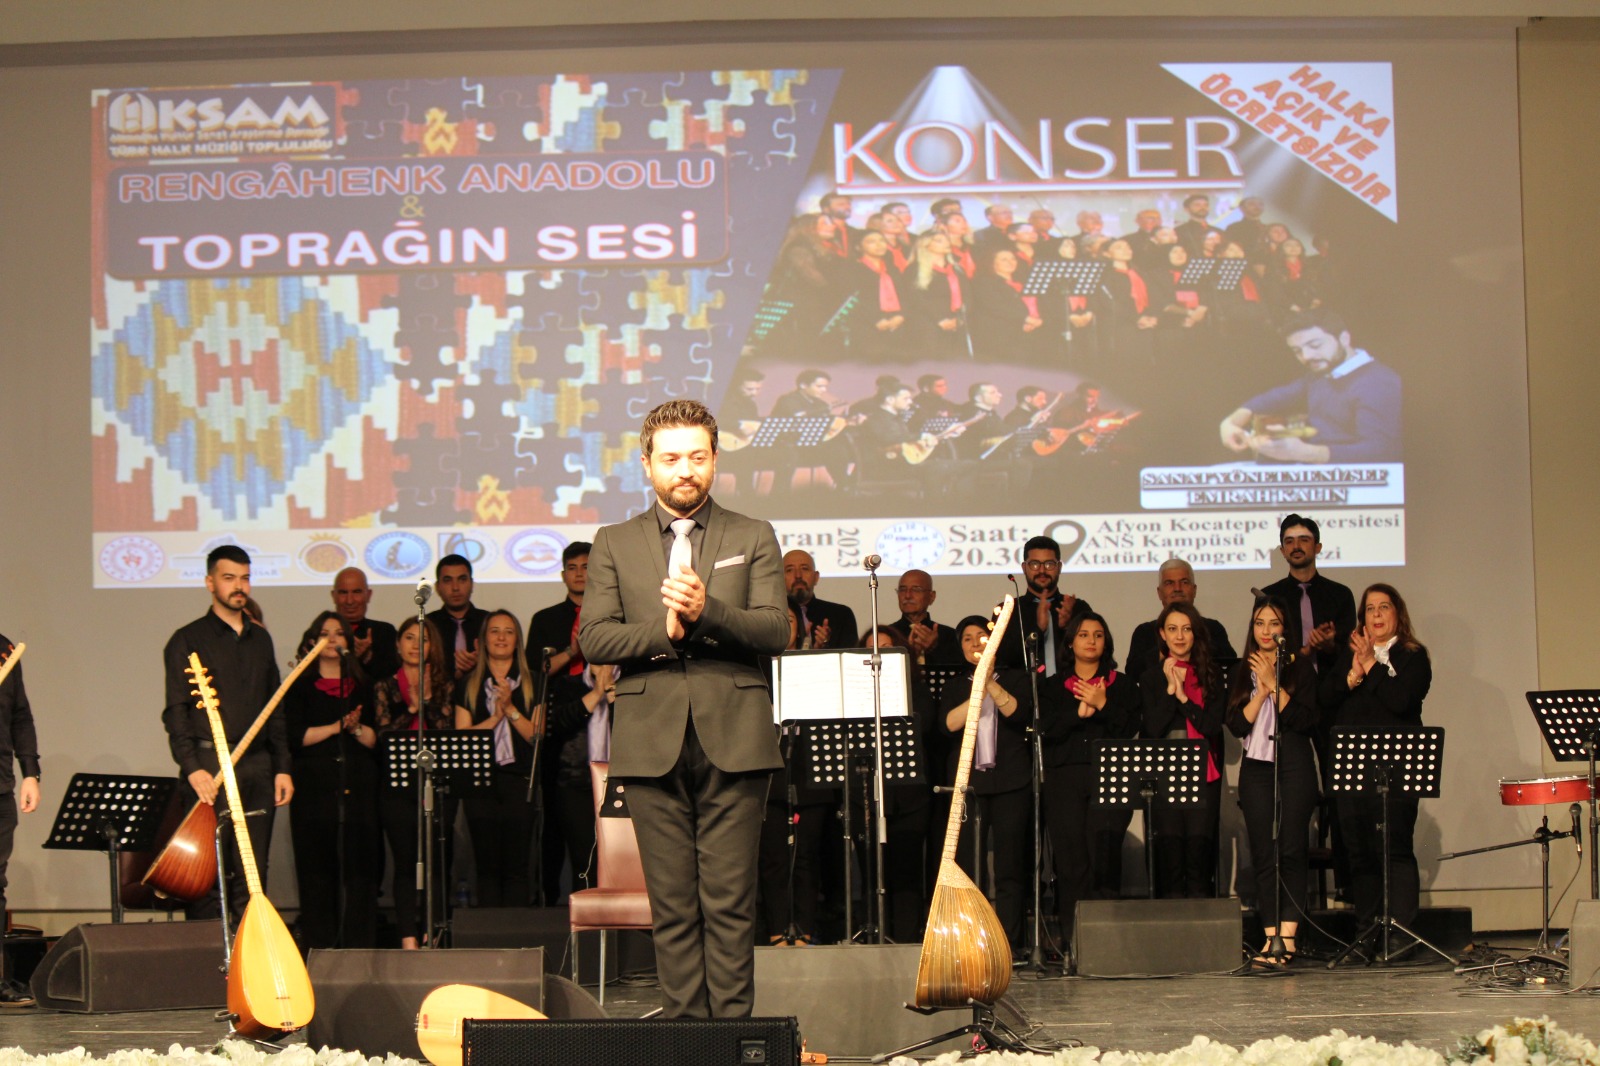 Türk Halk Müziği Konseri türkülerle gönülleri mest etti.